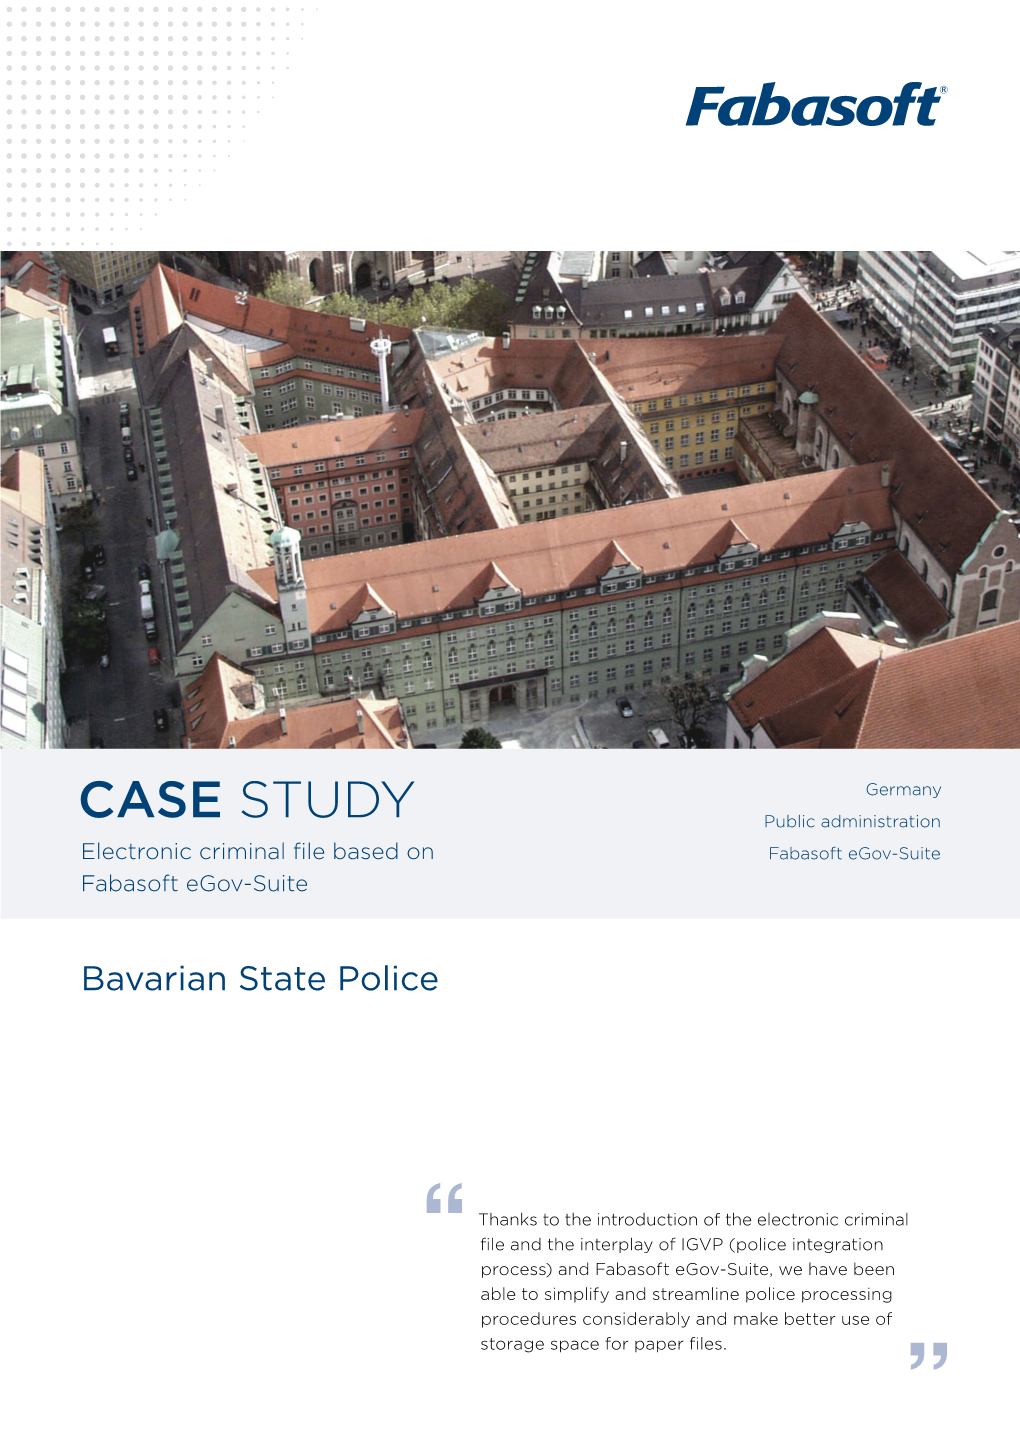 CASE STUDY Public Administration Electronic Criminal File Based on Fabasoft Egov-Suite Fabasoft Egov-Suite